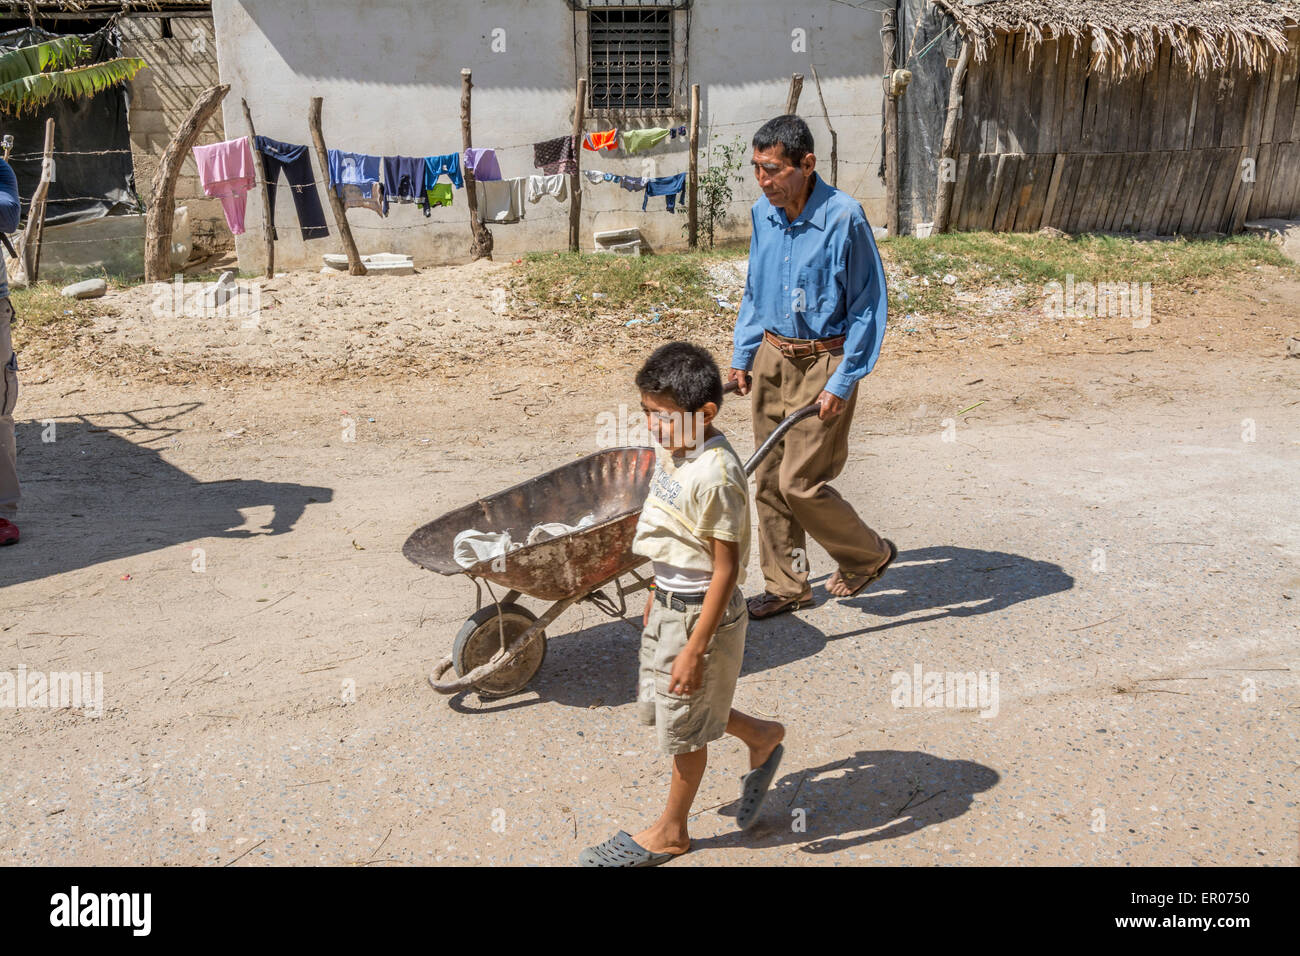 Man pushing wheelbarrow with young boy walking beside in Guatemala Stock Photo